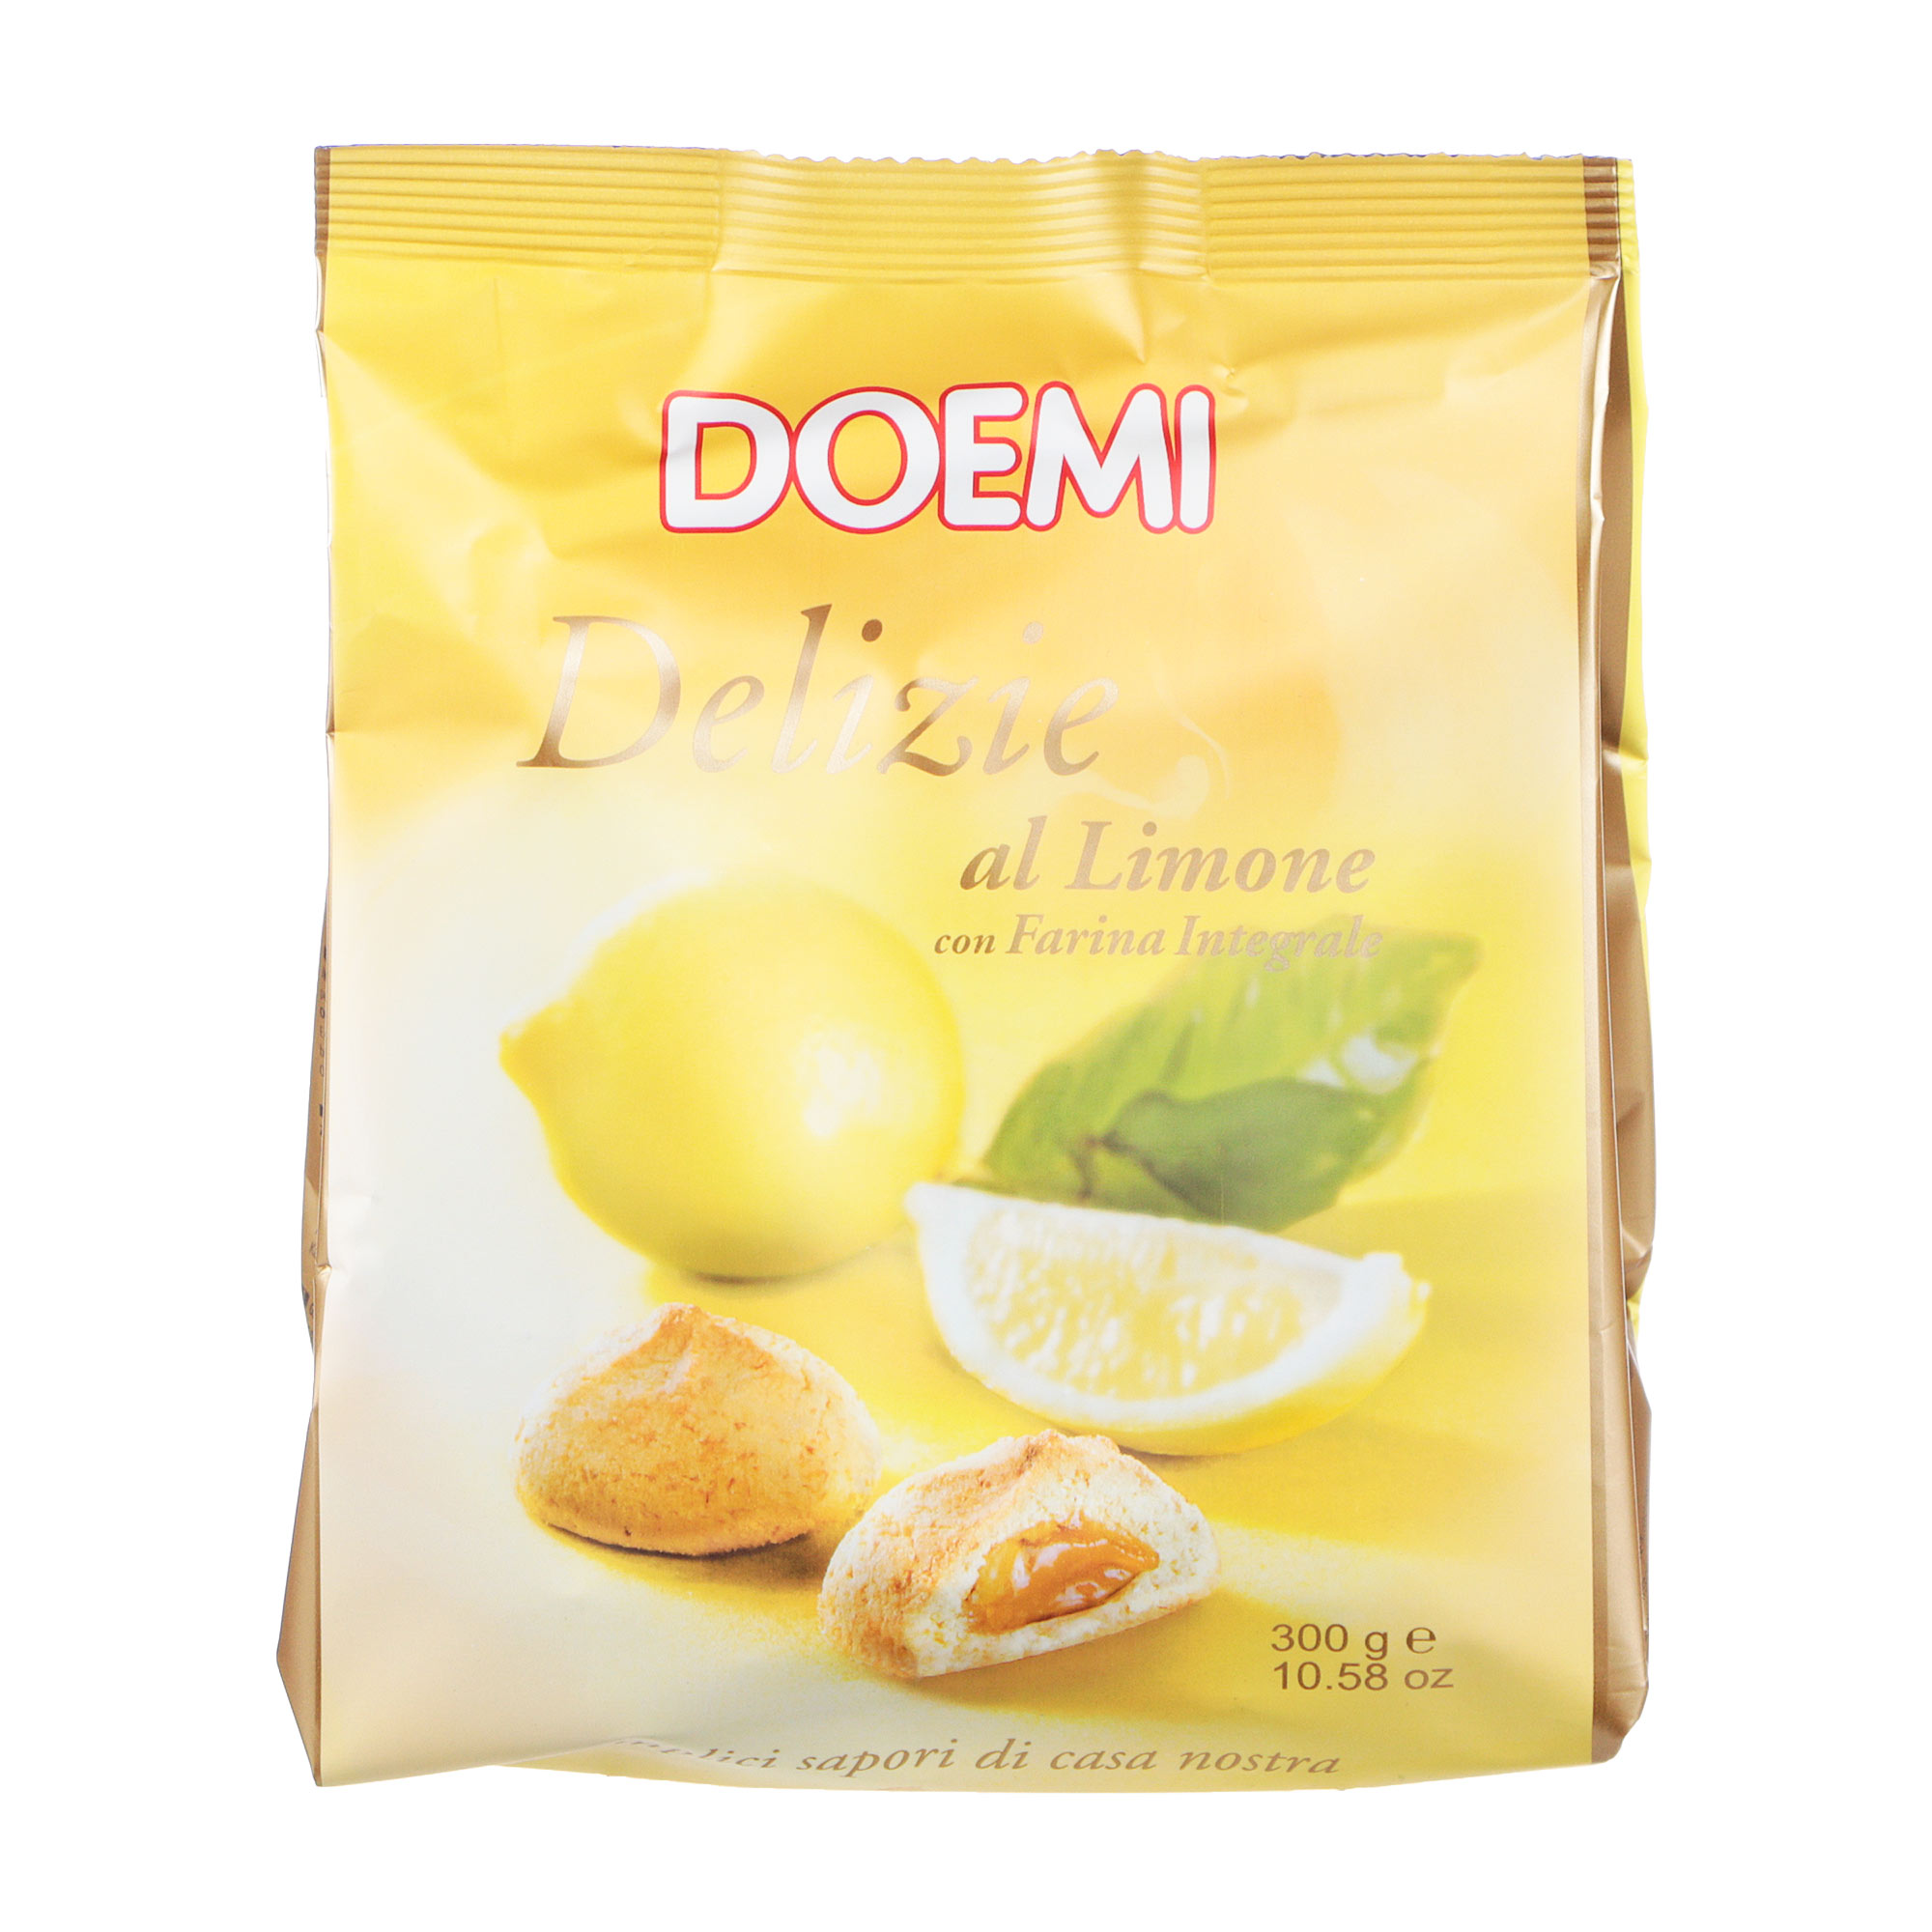 Печенье DOEMI Delights с лимонным кремом, 300 г печенье doemi delights с кремом джандуйя 300 г